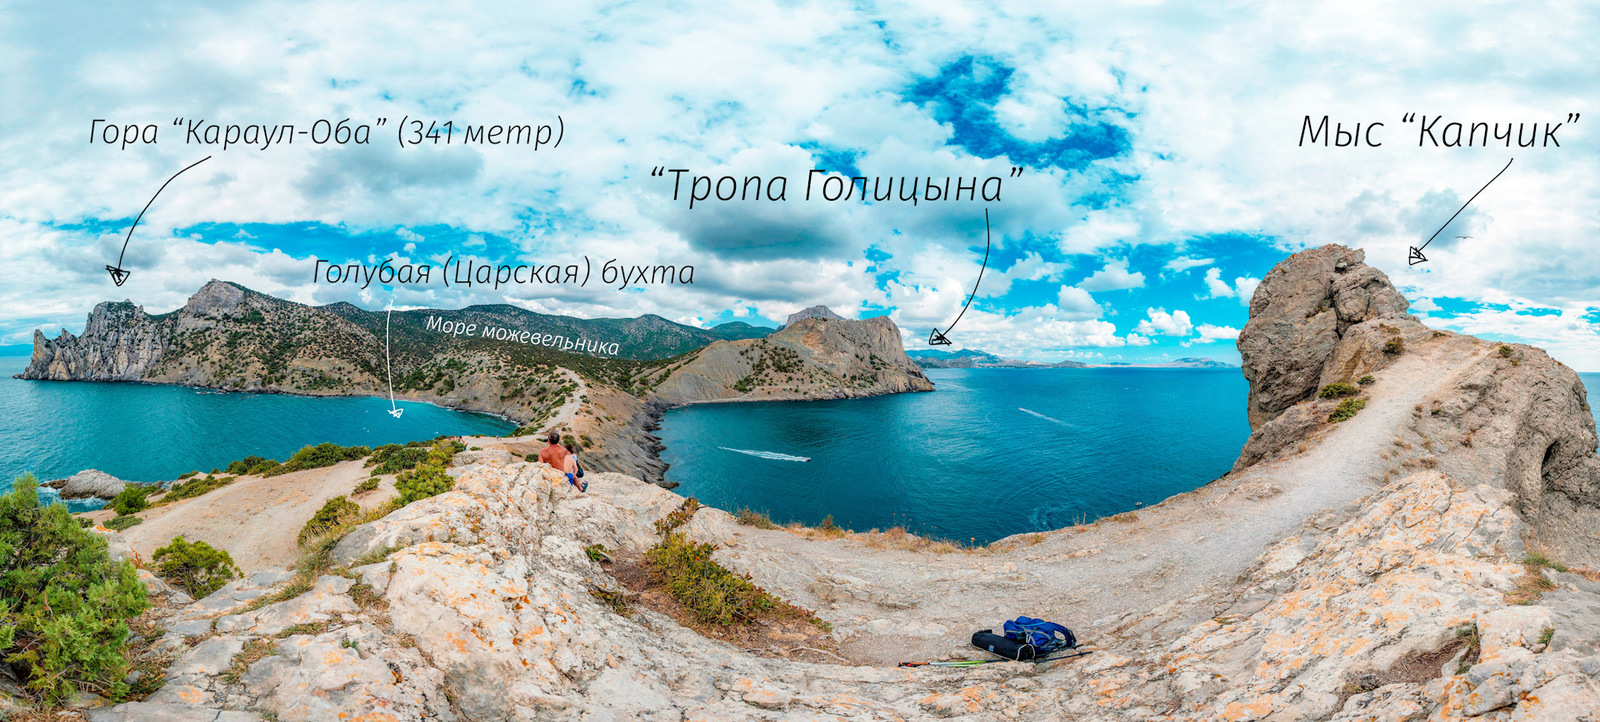 Весь Крым за отпуск [часть 5] «Новый свет» | Пикабу